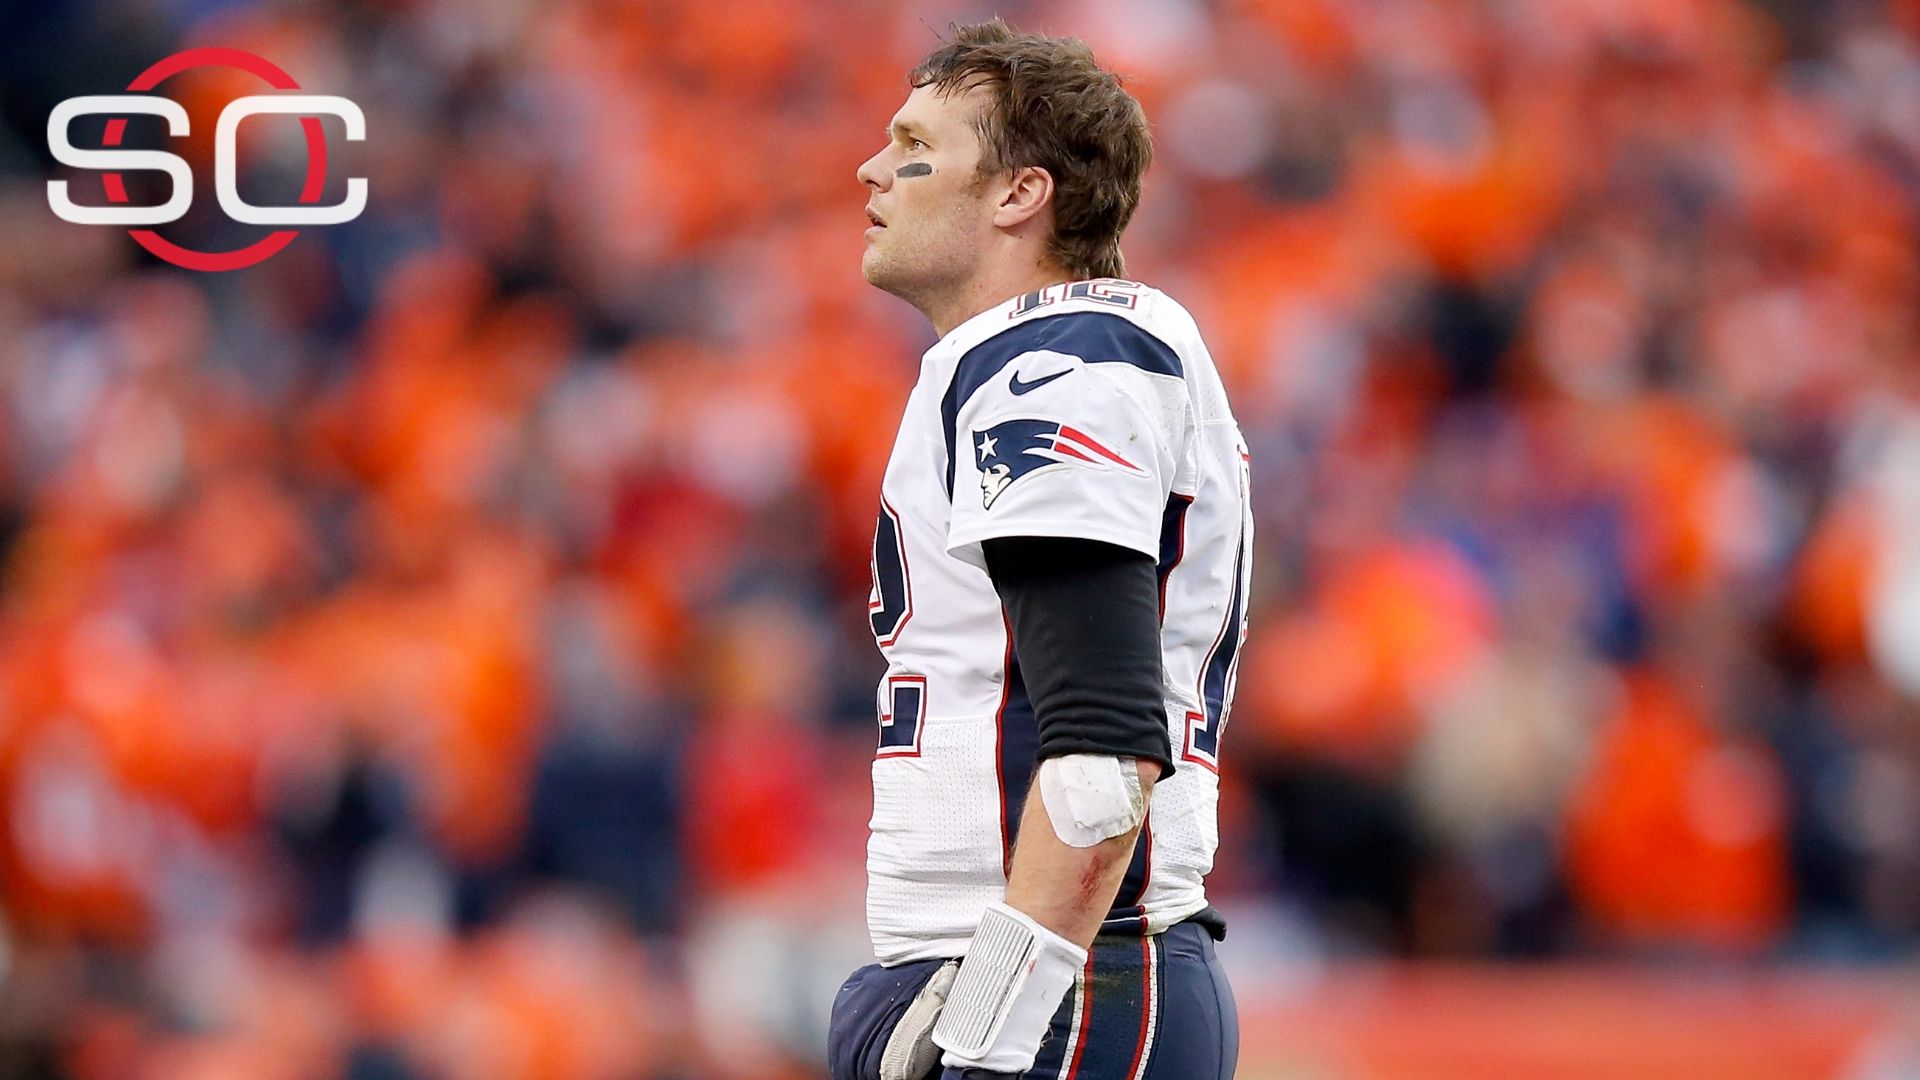 New deal links Tom Brady to Patriots through 2019 | abc7news.com